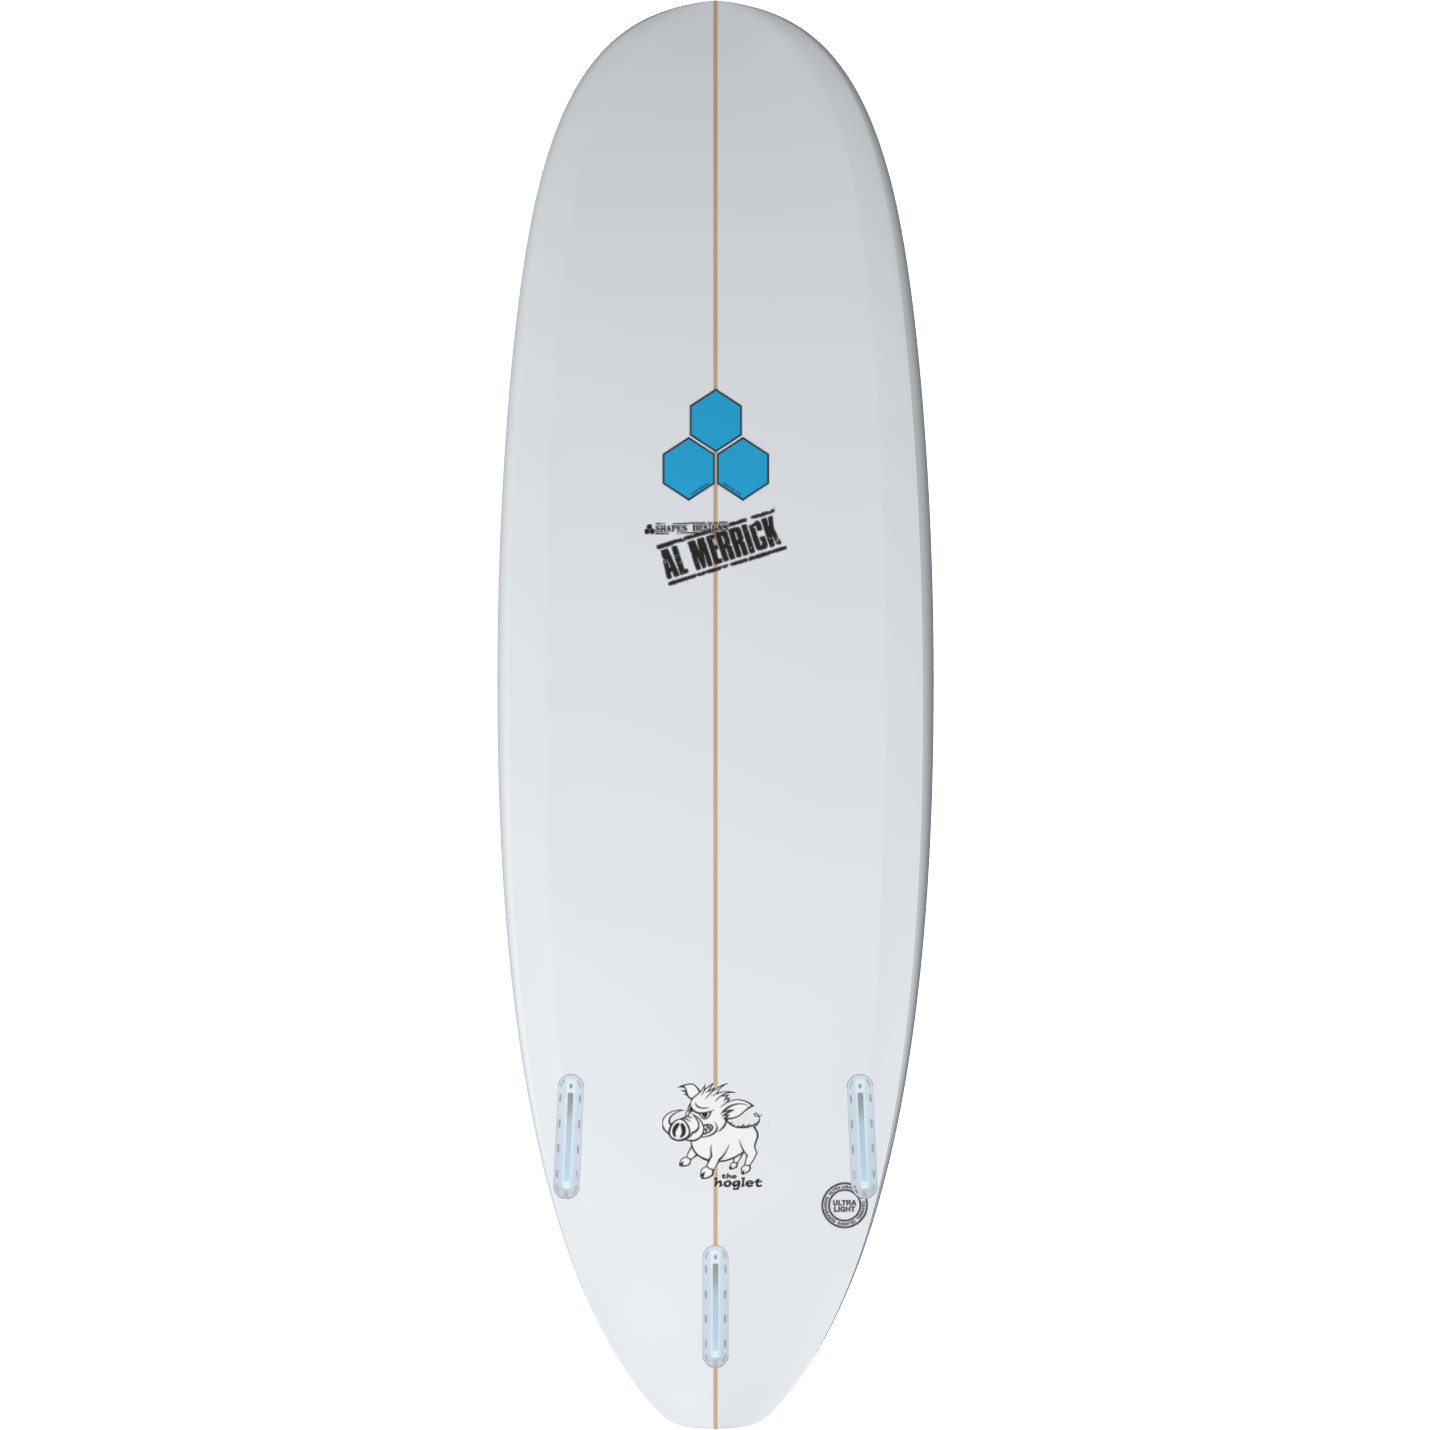 Channel Islands - Hoglet Surfboard